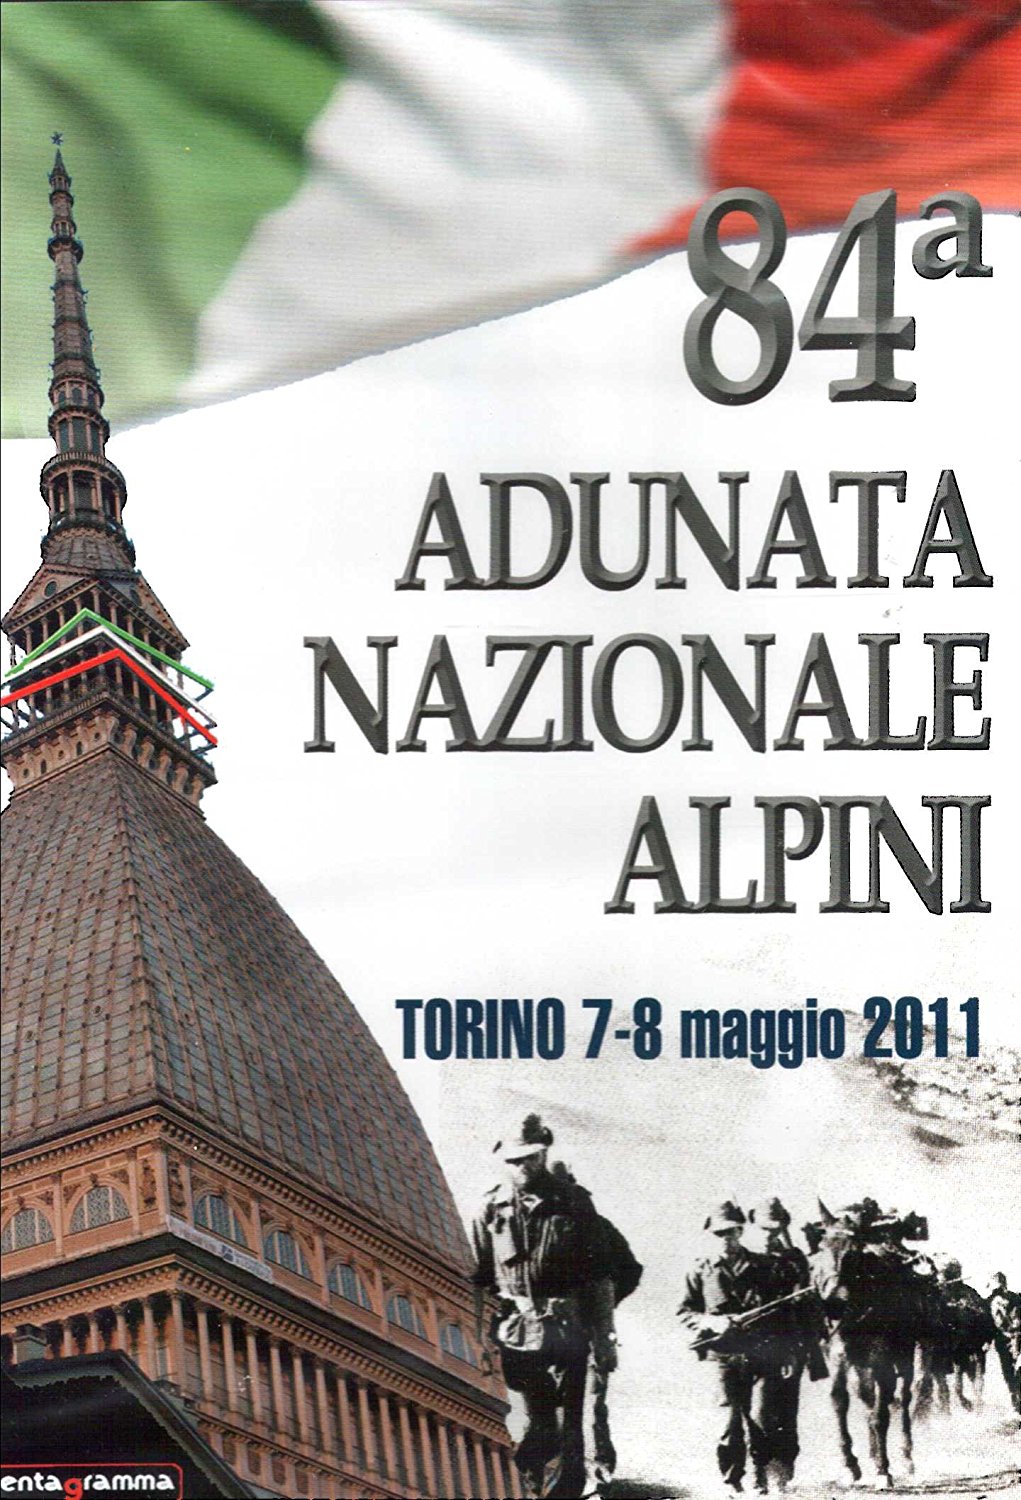 84 ADUNATA NAZIONALE ALPINI TORINO          